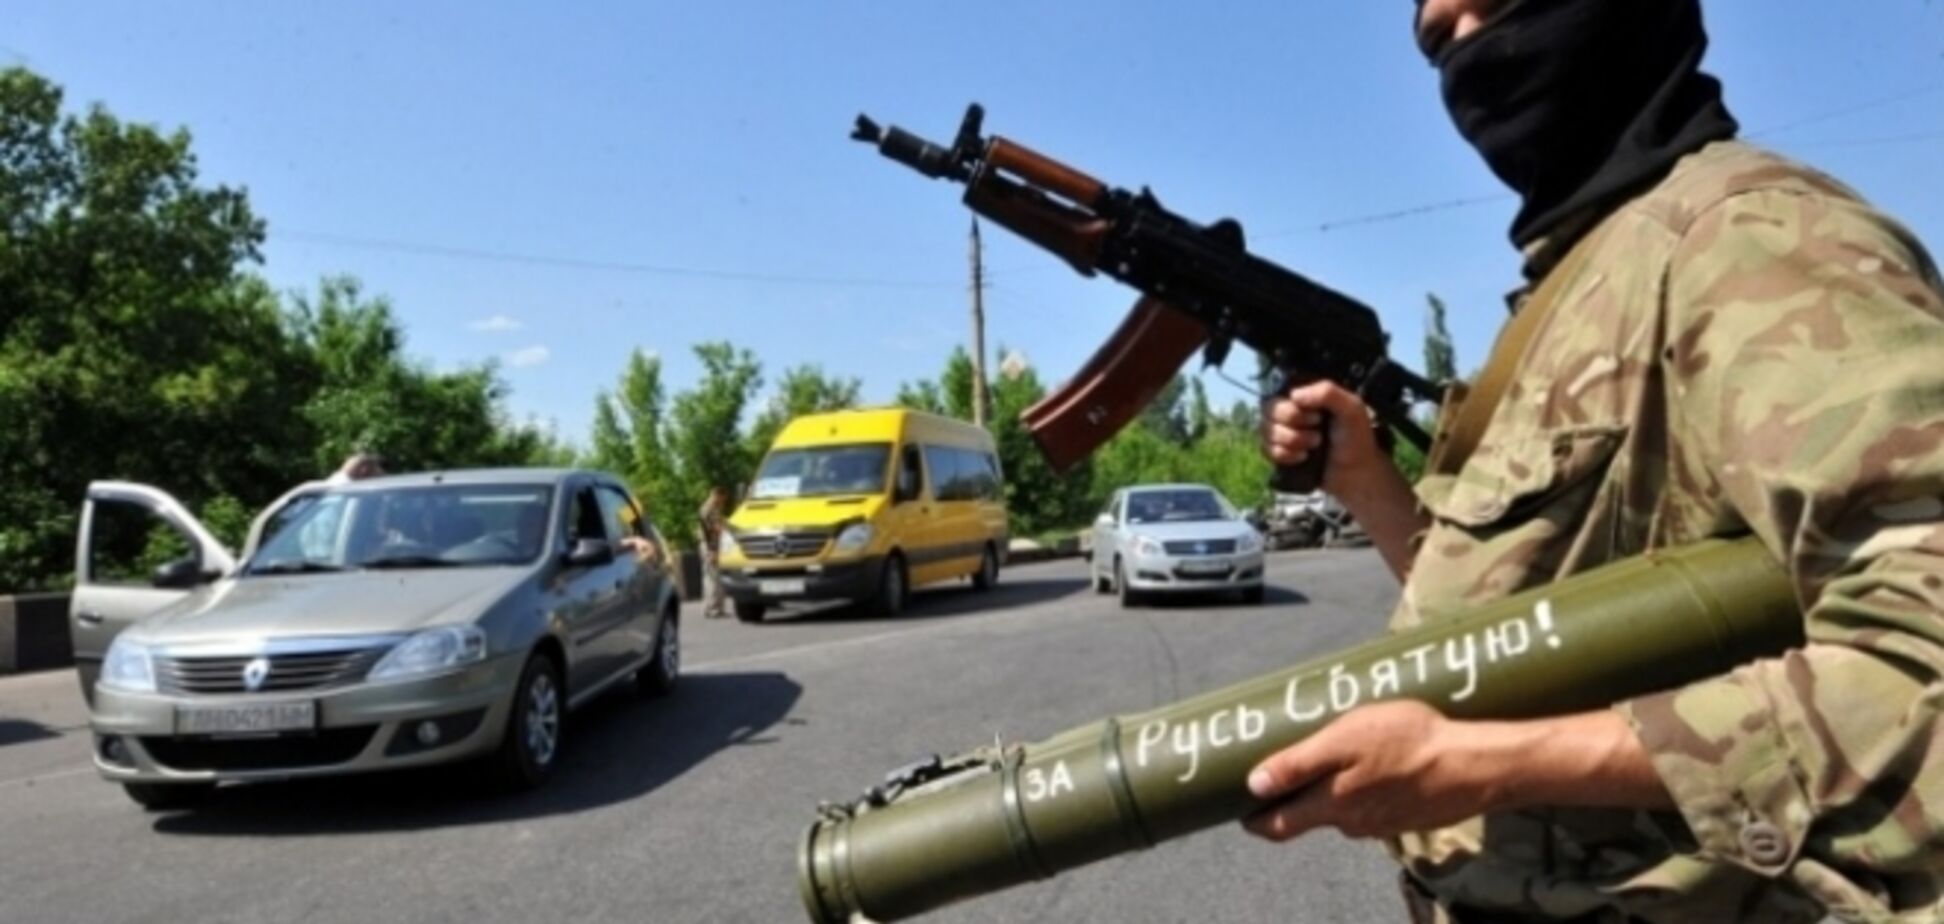 Терористи, потрапивши під обстріл українських військових, не змогли утекти із зони АТО - Селезньов